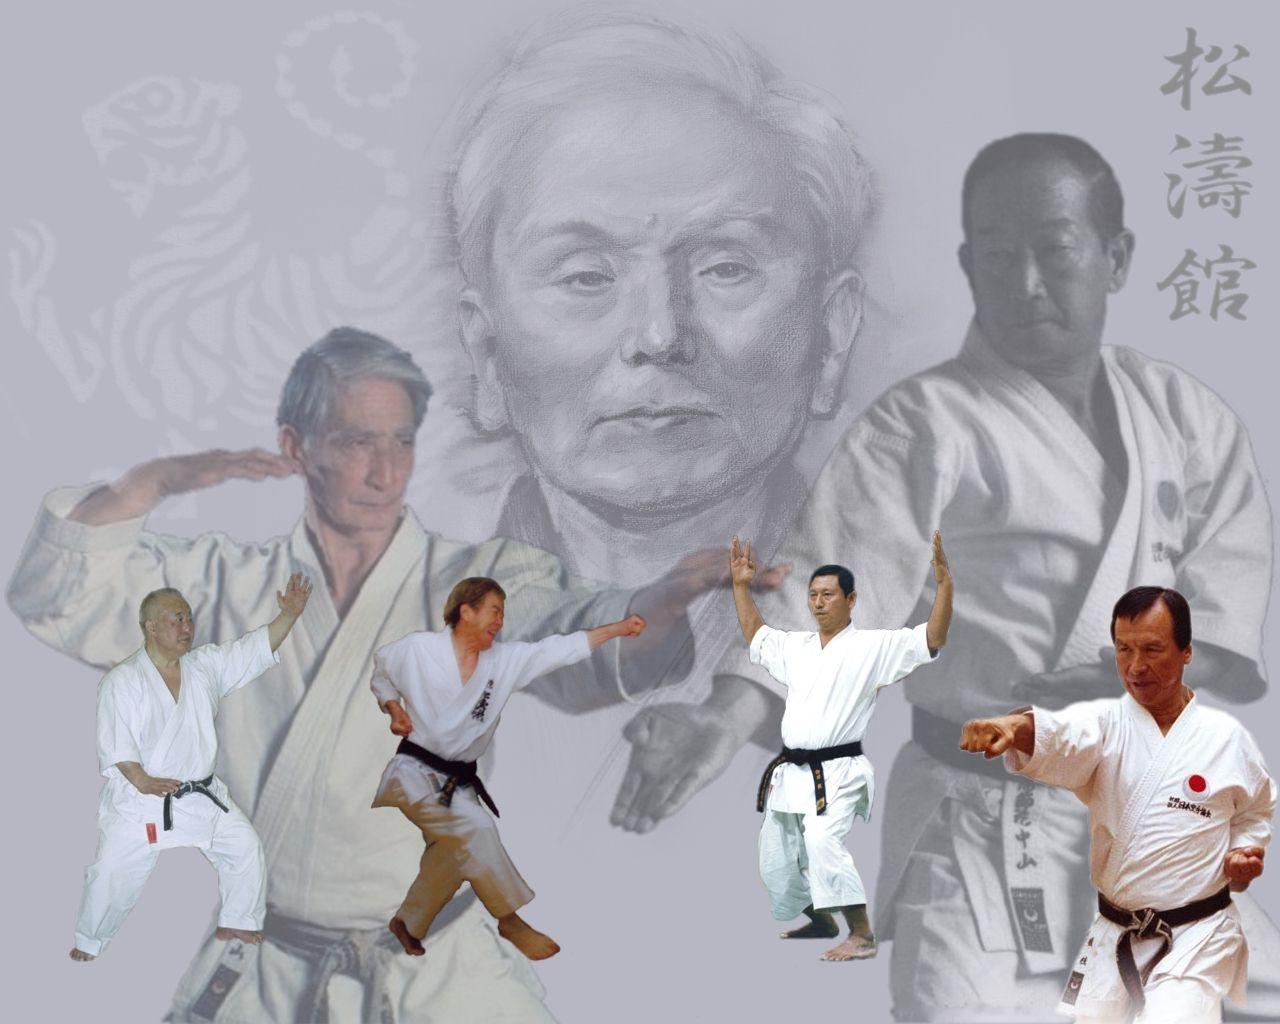 shotokan karate wallpaper